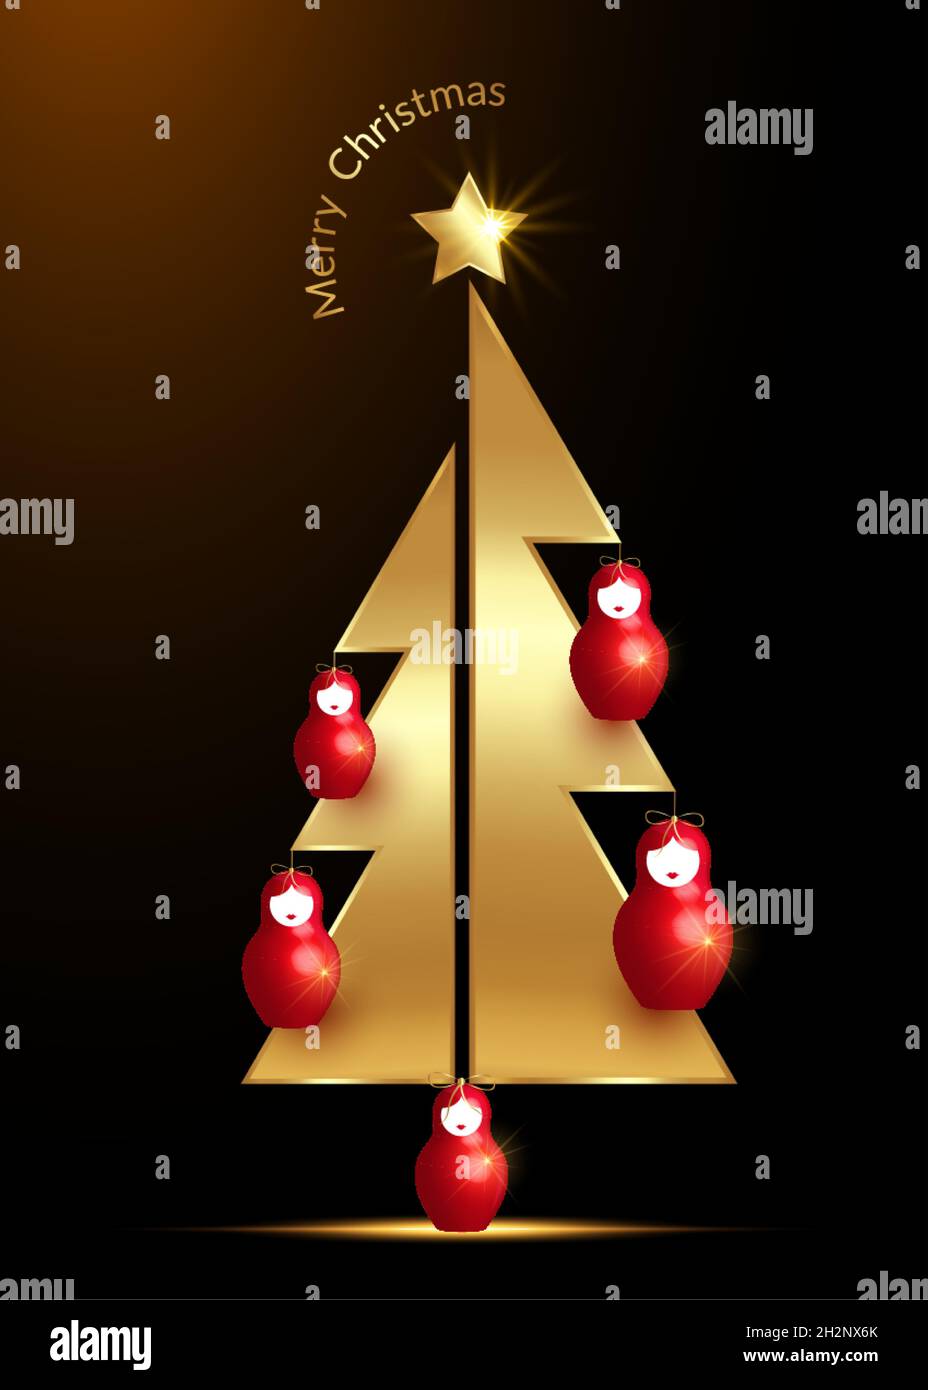 Arbre de Noël doré et étoile avec poupée russe rouge Matrioshka ornements.Symbole de bonne année, fête de Noël.Décoration lumineuse dorée Illustration de Vecteur